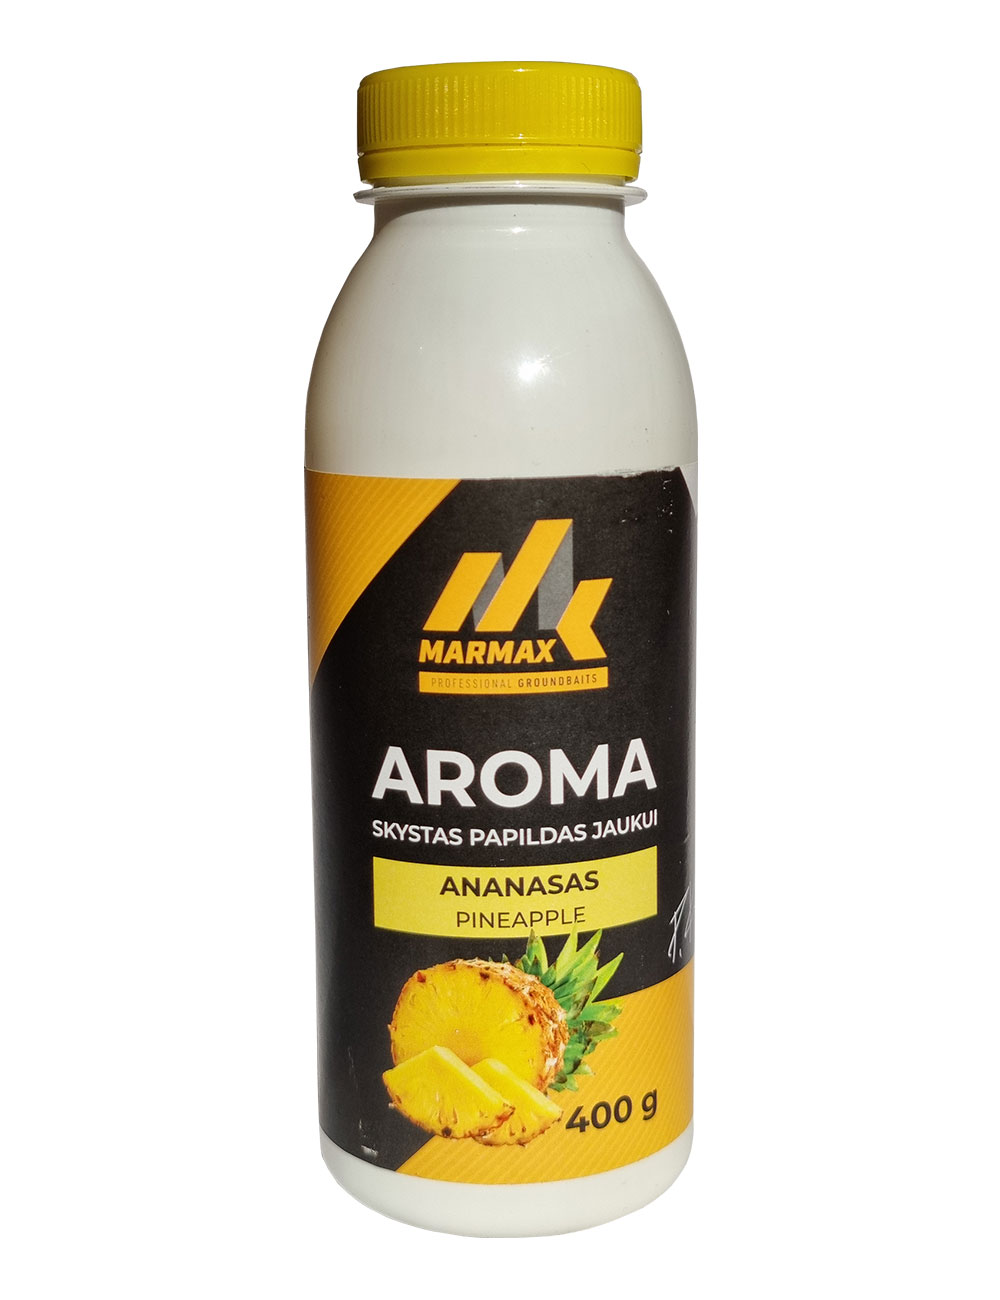 Aroma - Ananasas (400g)